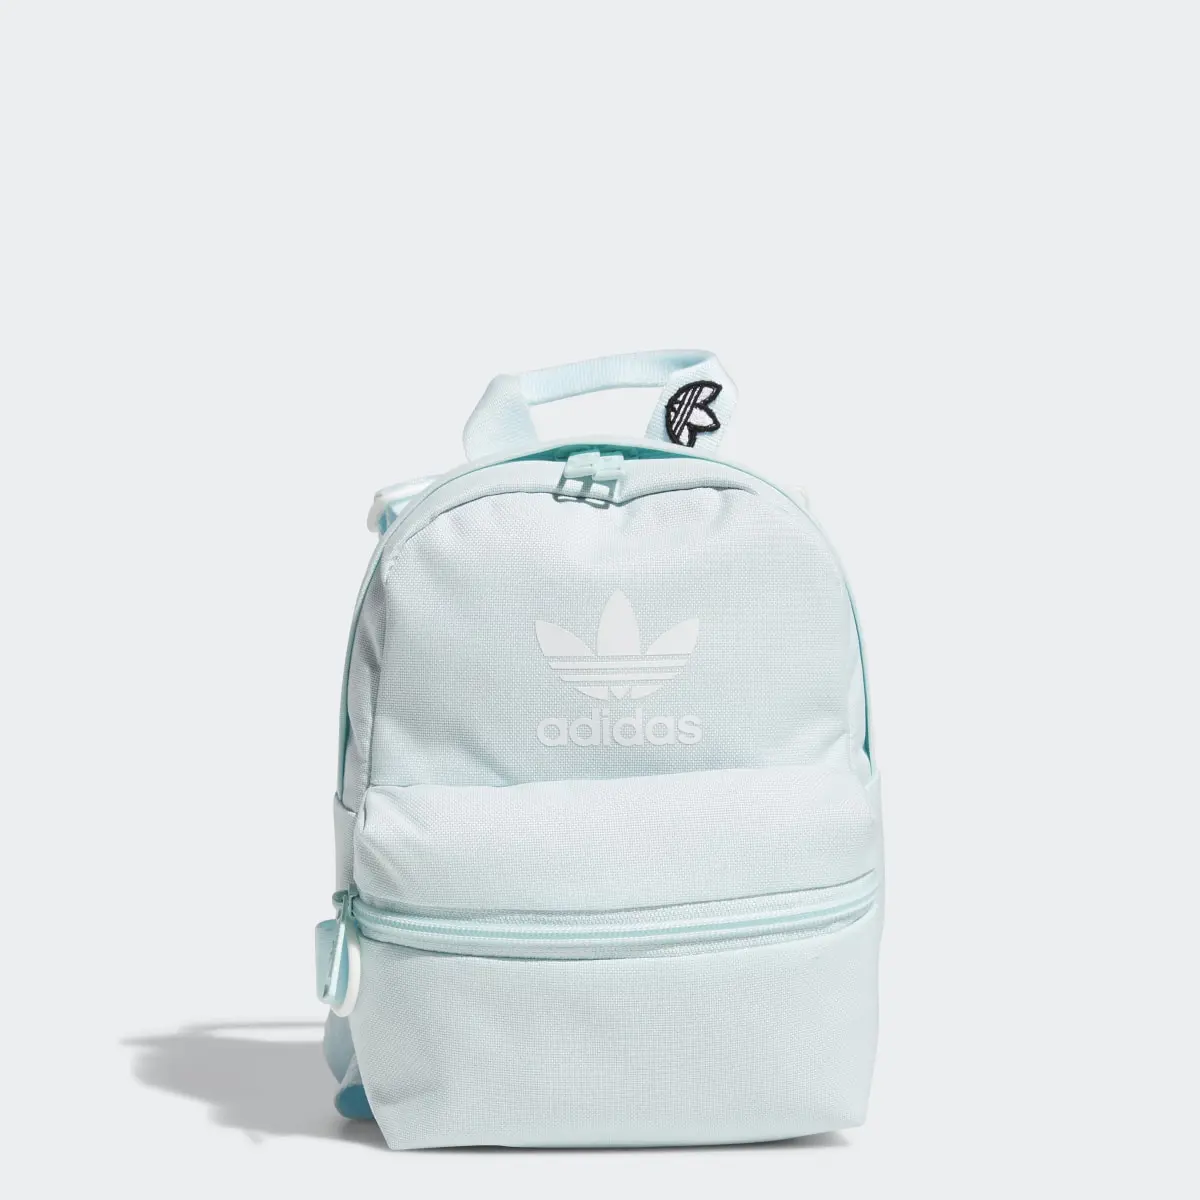 Adidas Trefoil 2.0 Mini Backpack. 1